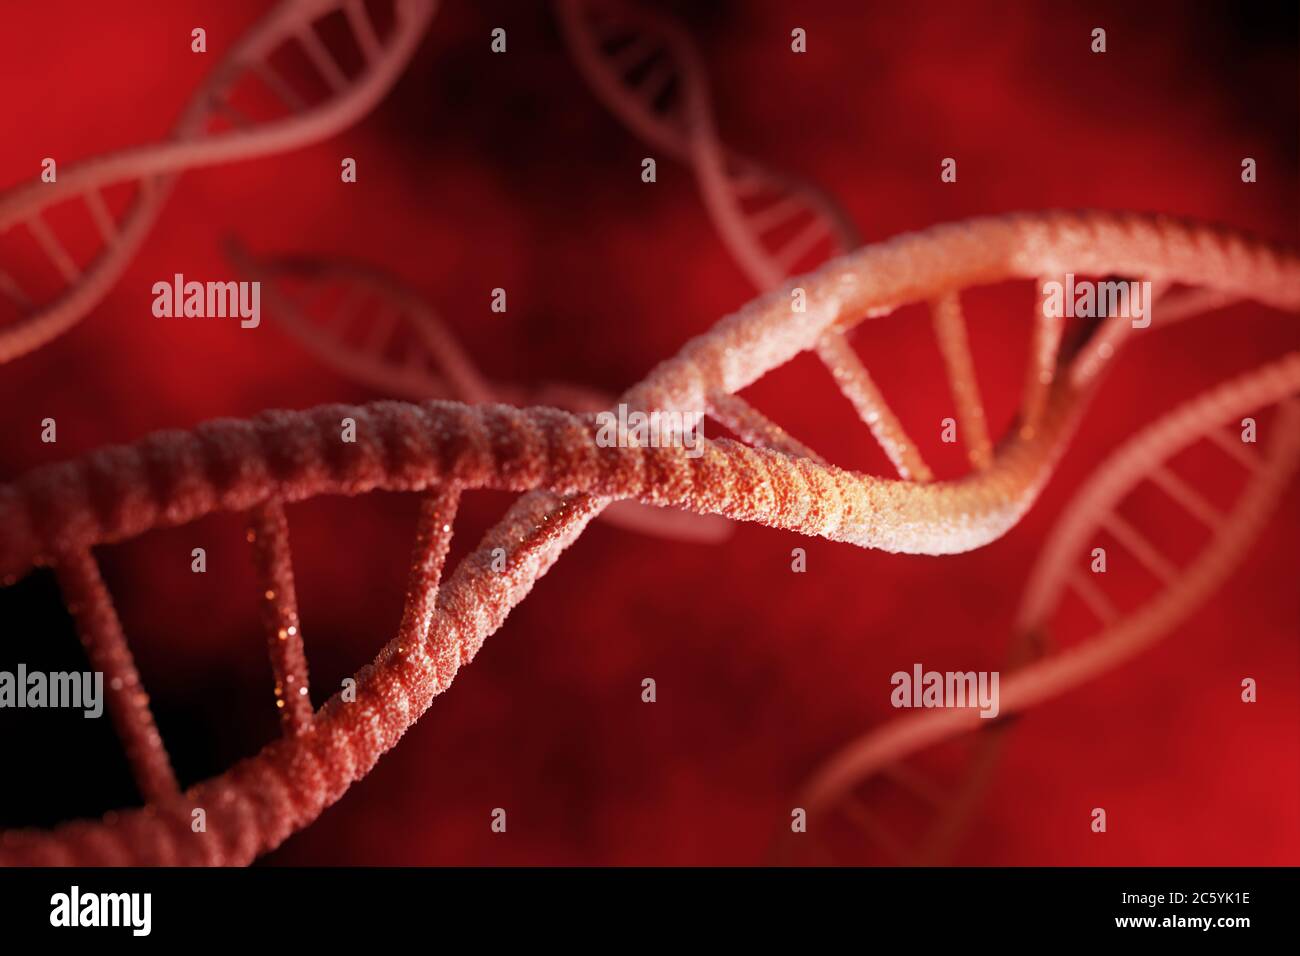 Les particules rouges de structure d'adn sont brillantes sur fond rouge foncé. Concept génétique et médecine. rendu 3d. Illustration 3d de haute qualité Banque D'Images